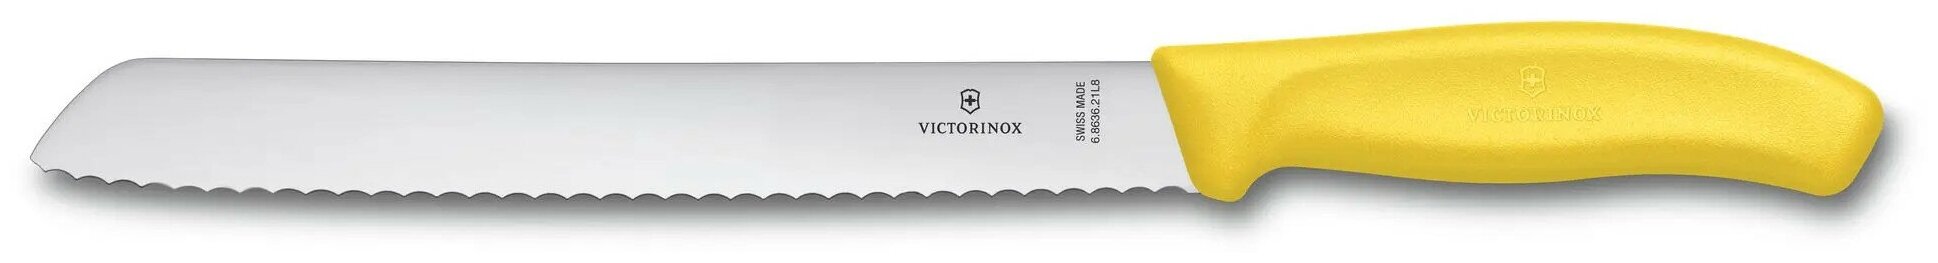 Нож для хлеба VICTORINOX Swiss Classic, лезвие 21 см с волнистой кромкой, жёлтый, в блистере 6.8636.21L8B